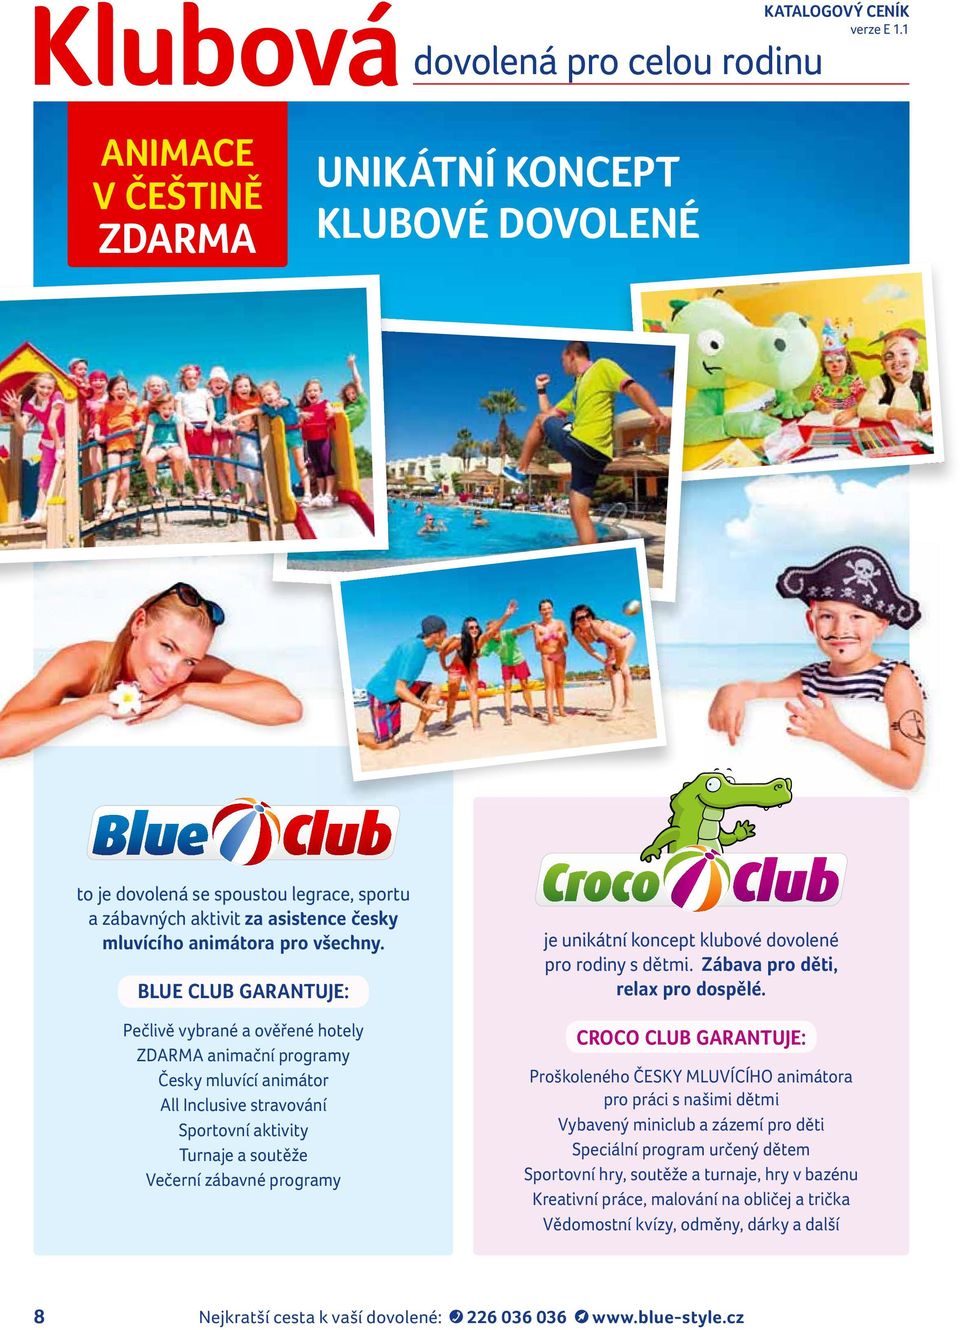 BLUE CLUB GARANTUJE: Pečlivě vybrané a ověřené hotely ZDARMA animační programy Česky mluvící animátor All Inclusive stravování Sportovní aktivity Turnaje a soutěže Večerní zábavné programy je